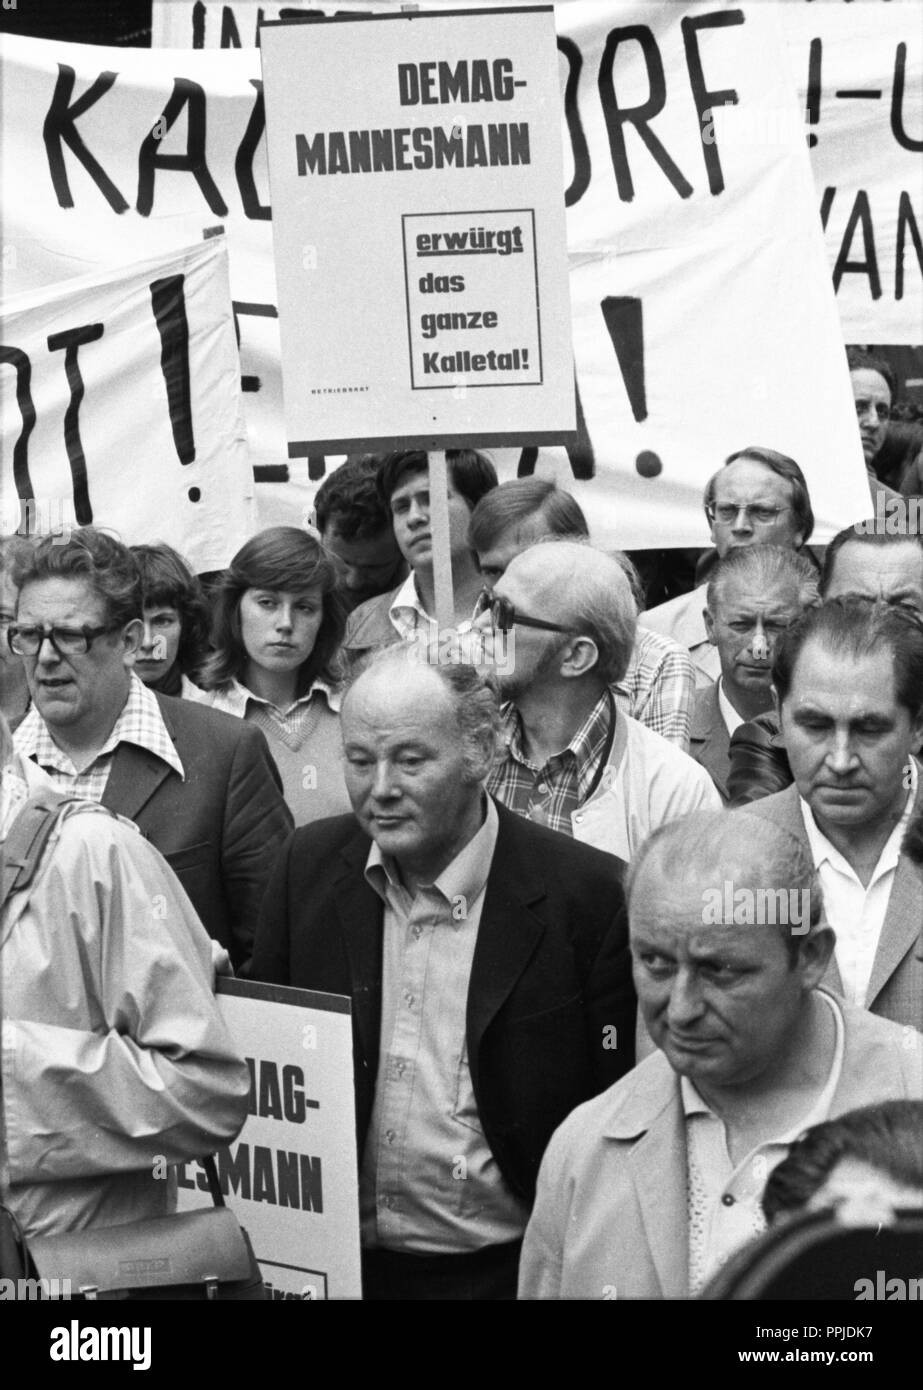 Sorgen um ihre Arbeitsplätze brachte dem Demag-Mannesmann Belegschaft auf die Straße am 13. Juli 1975 in Düsseldorf. Der Protest wurde vor allem durch die bevorstehende Schließung des Kalletal Anlage gekennzeichnet. | Verwendung weltweit Stockfoto